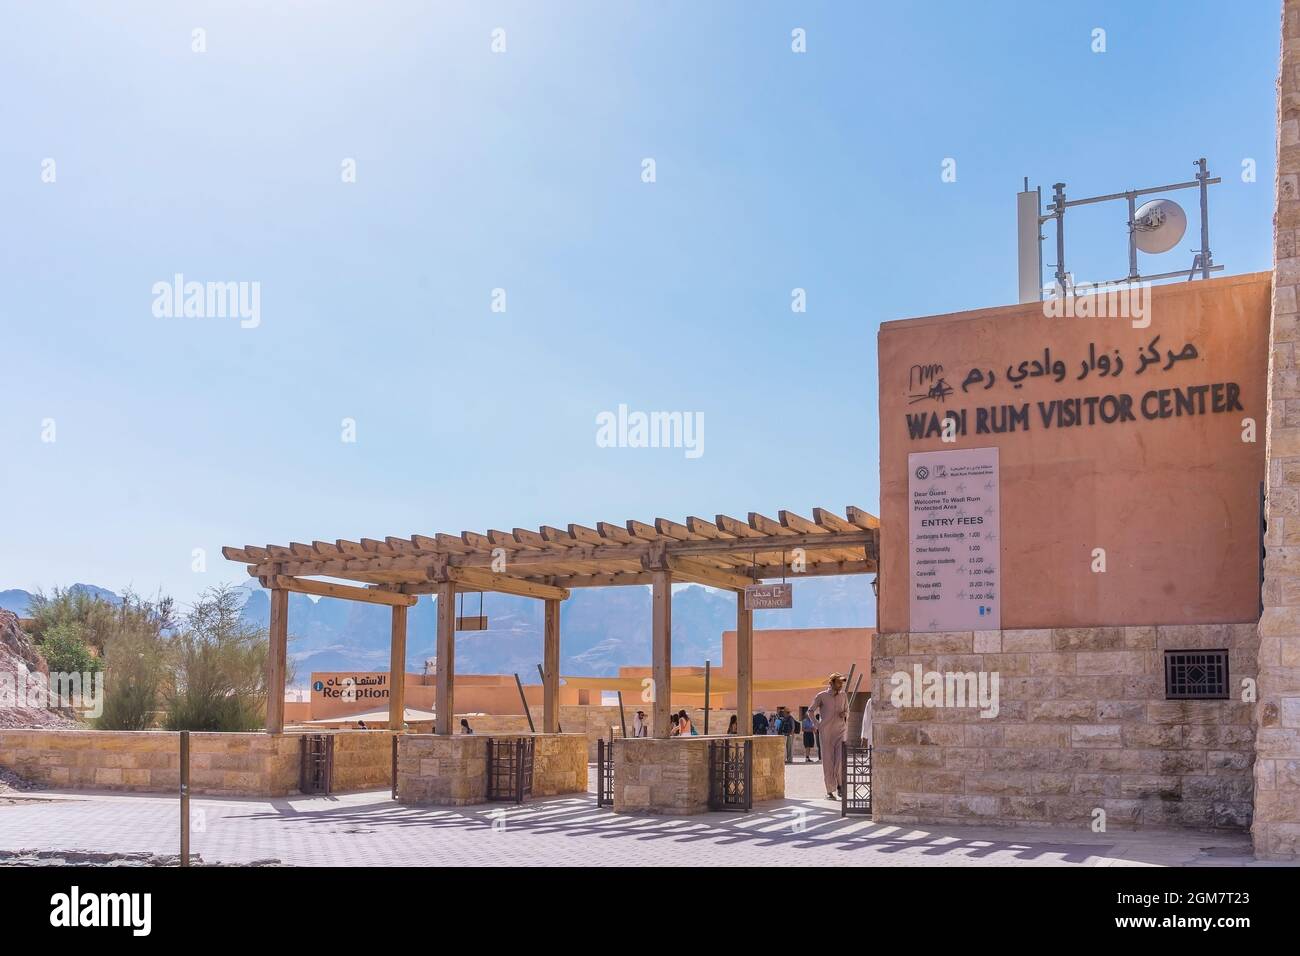 WADI RUM, JORDANIE - 14 OCTOBRE 2018 : partie intérieure du centre d'accueil de Wadi Rum. La vallée de Wadi Rum est classée au patrimoine mondial de l'UNESCO Banque D'Images